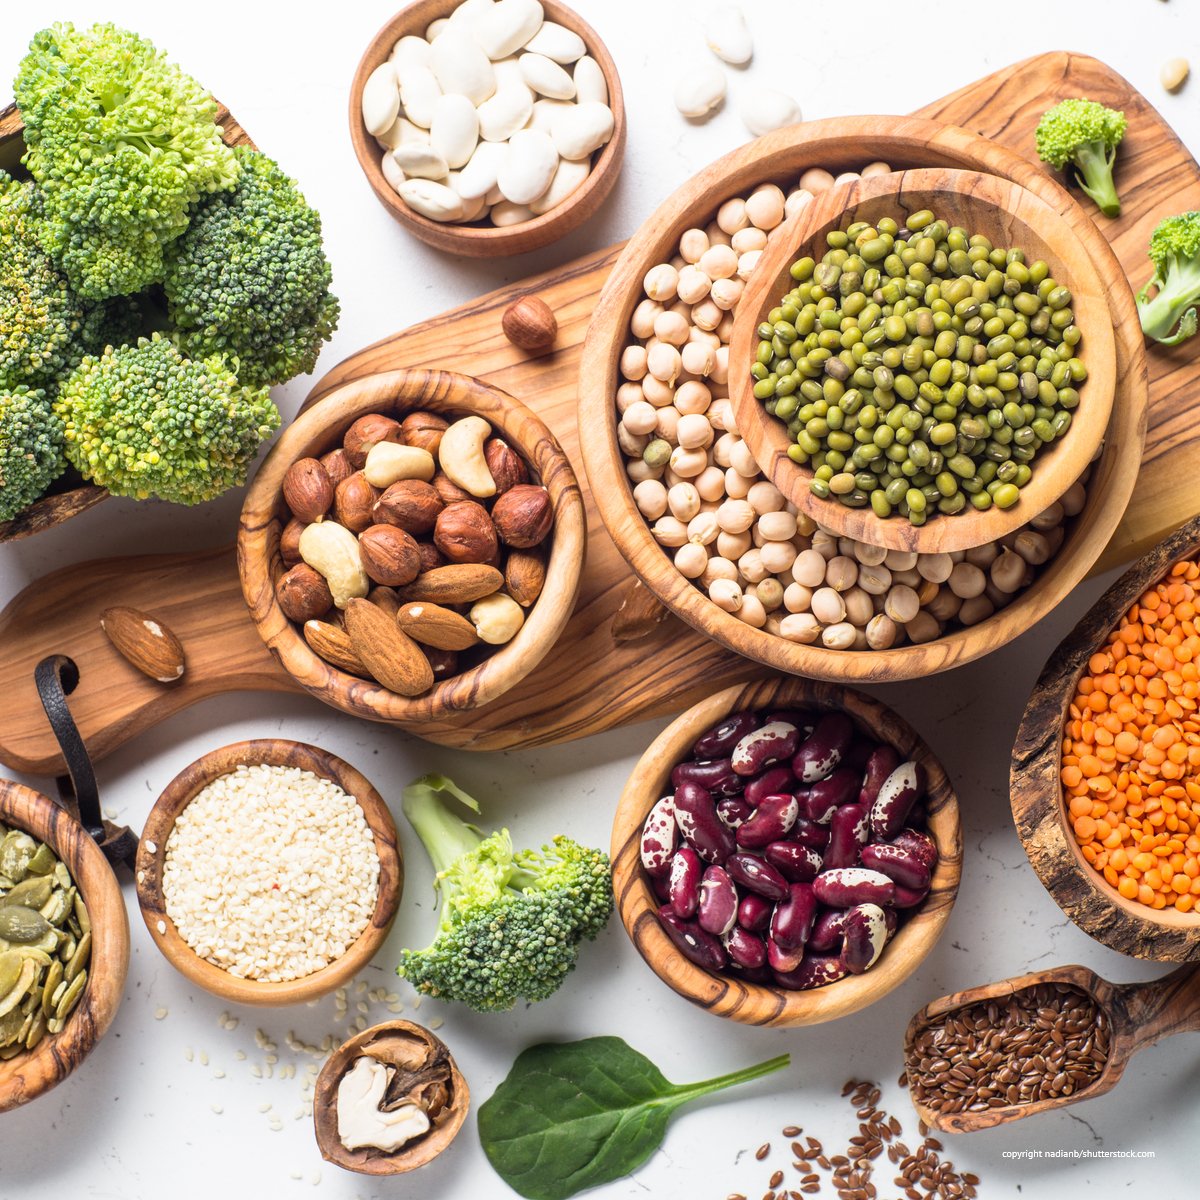 Hülsenfrüchte, Nüsse und Samen auf einem Küchenbrettchen dekoriert. Veganen Lebensmittel fehlt Vitamin B12.